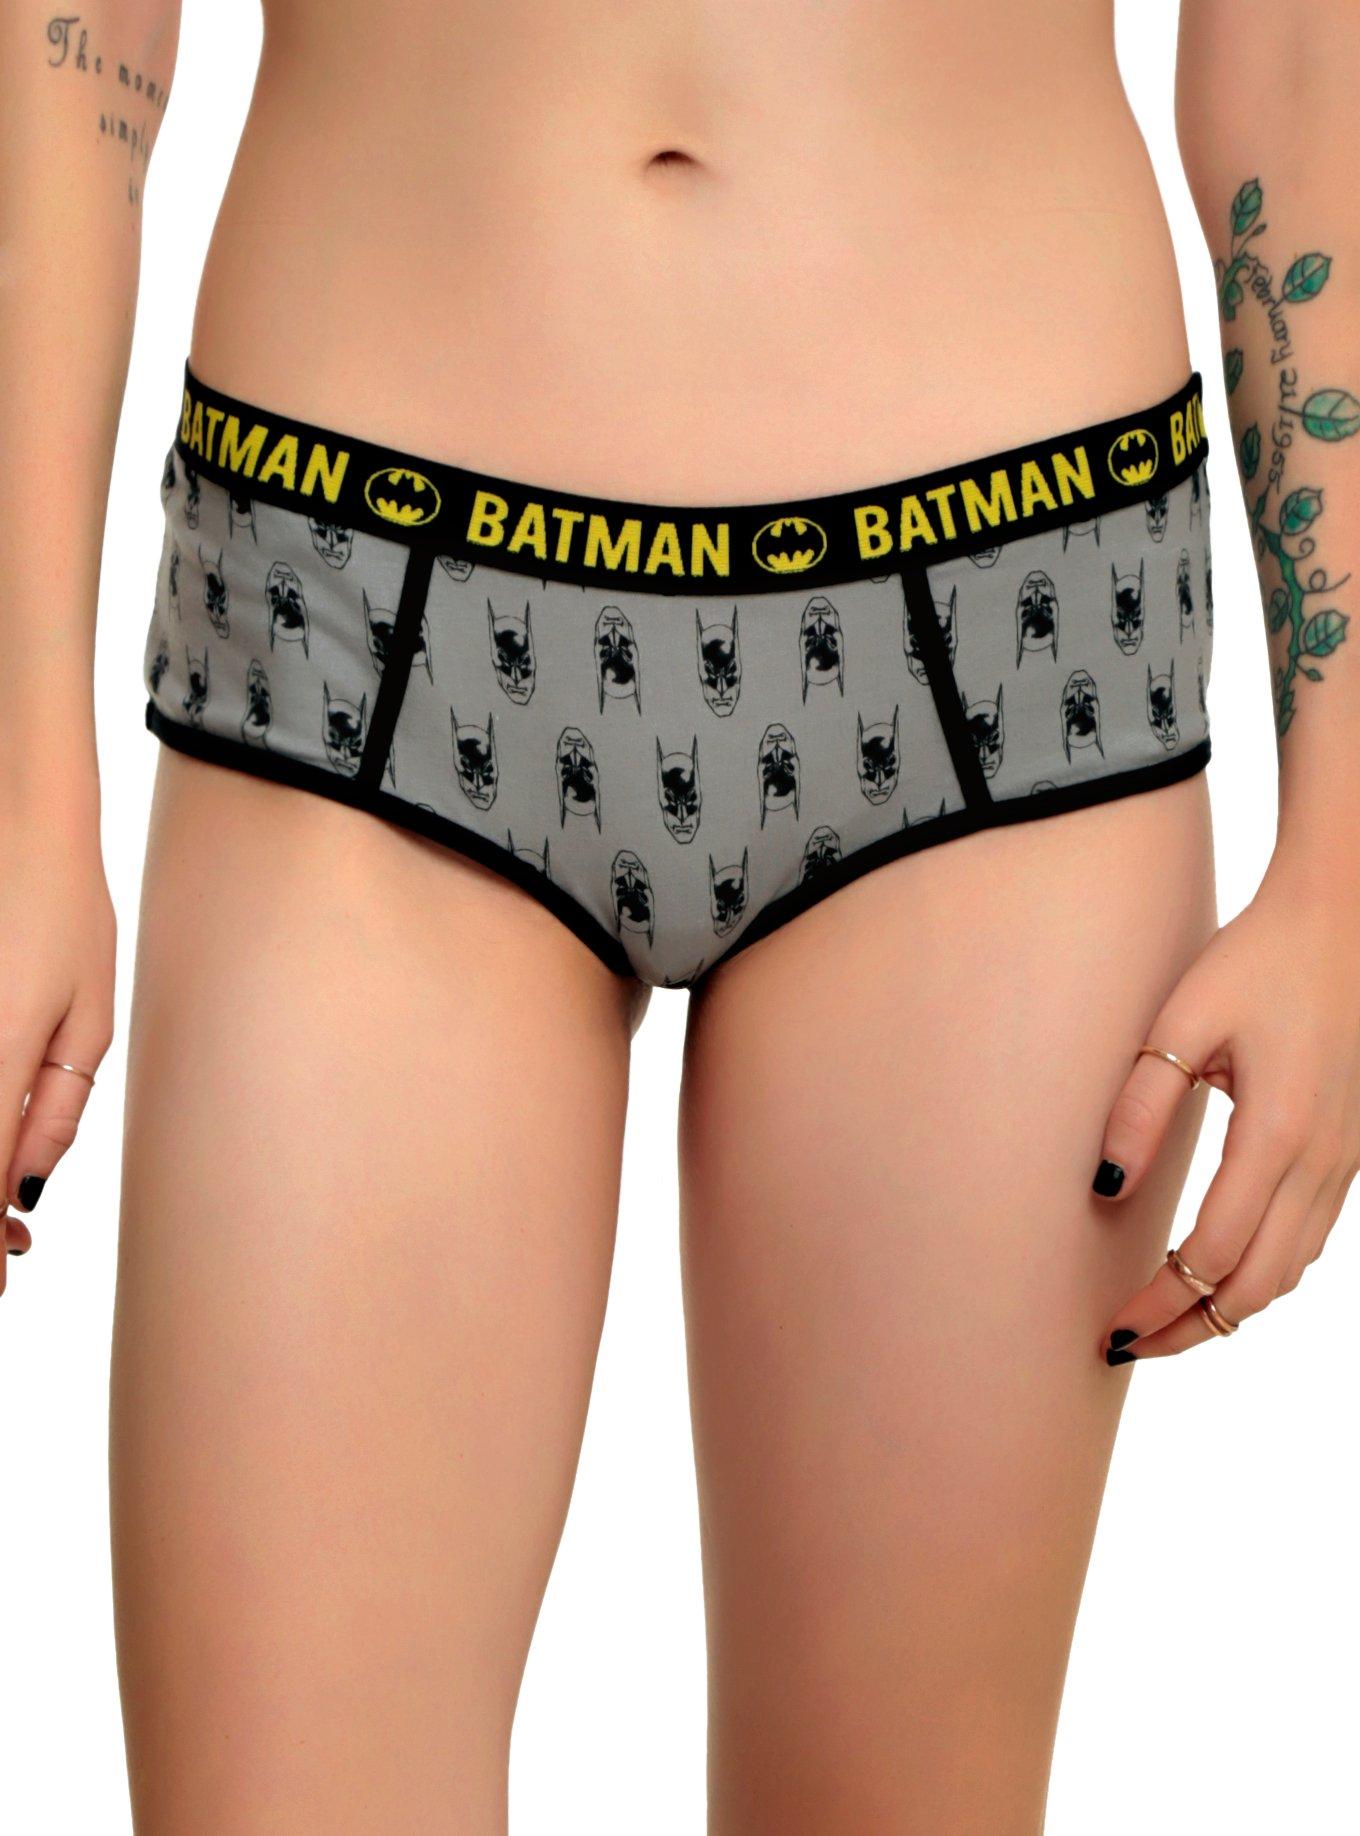 Girls In Batman Panties ana cheri